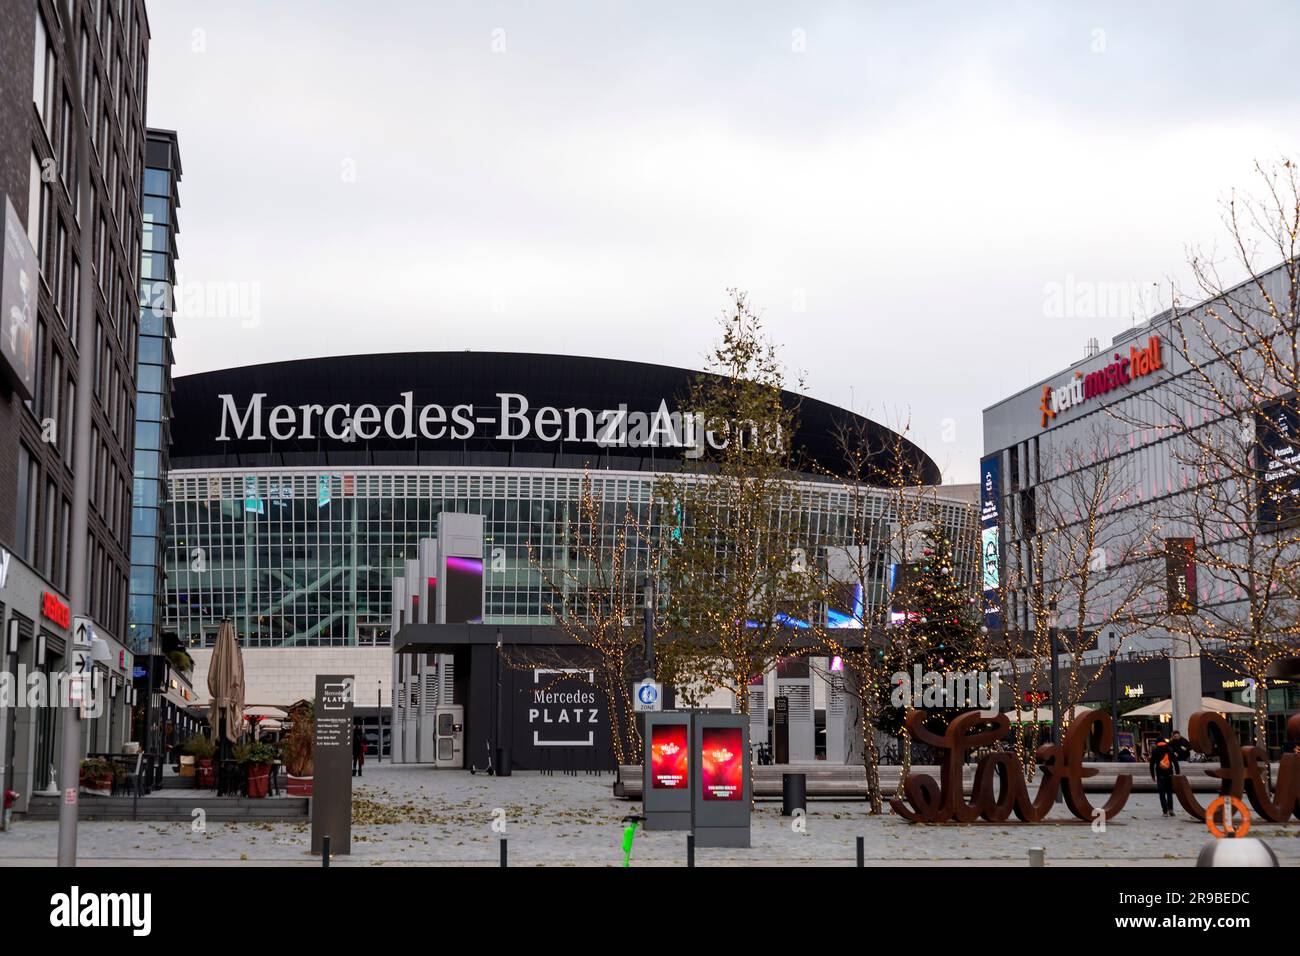 Berlín, ALEMANIA - 17 de diciembre de 2021: Se inauguró la vista exterior del Mercedez Benz Arena, un estadio interior multiusos en Friedrichshain, Berlín, Alemania Foto de stock